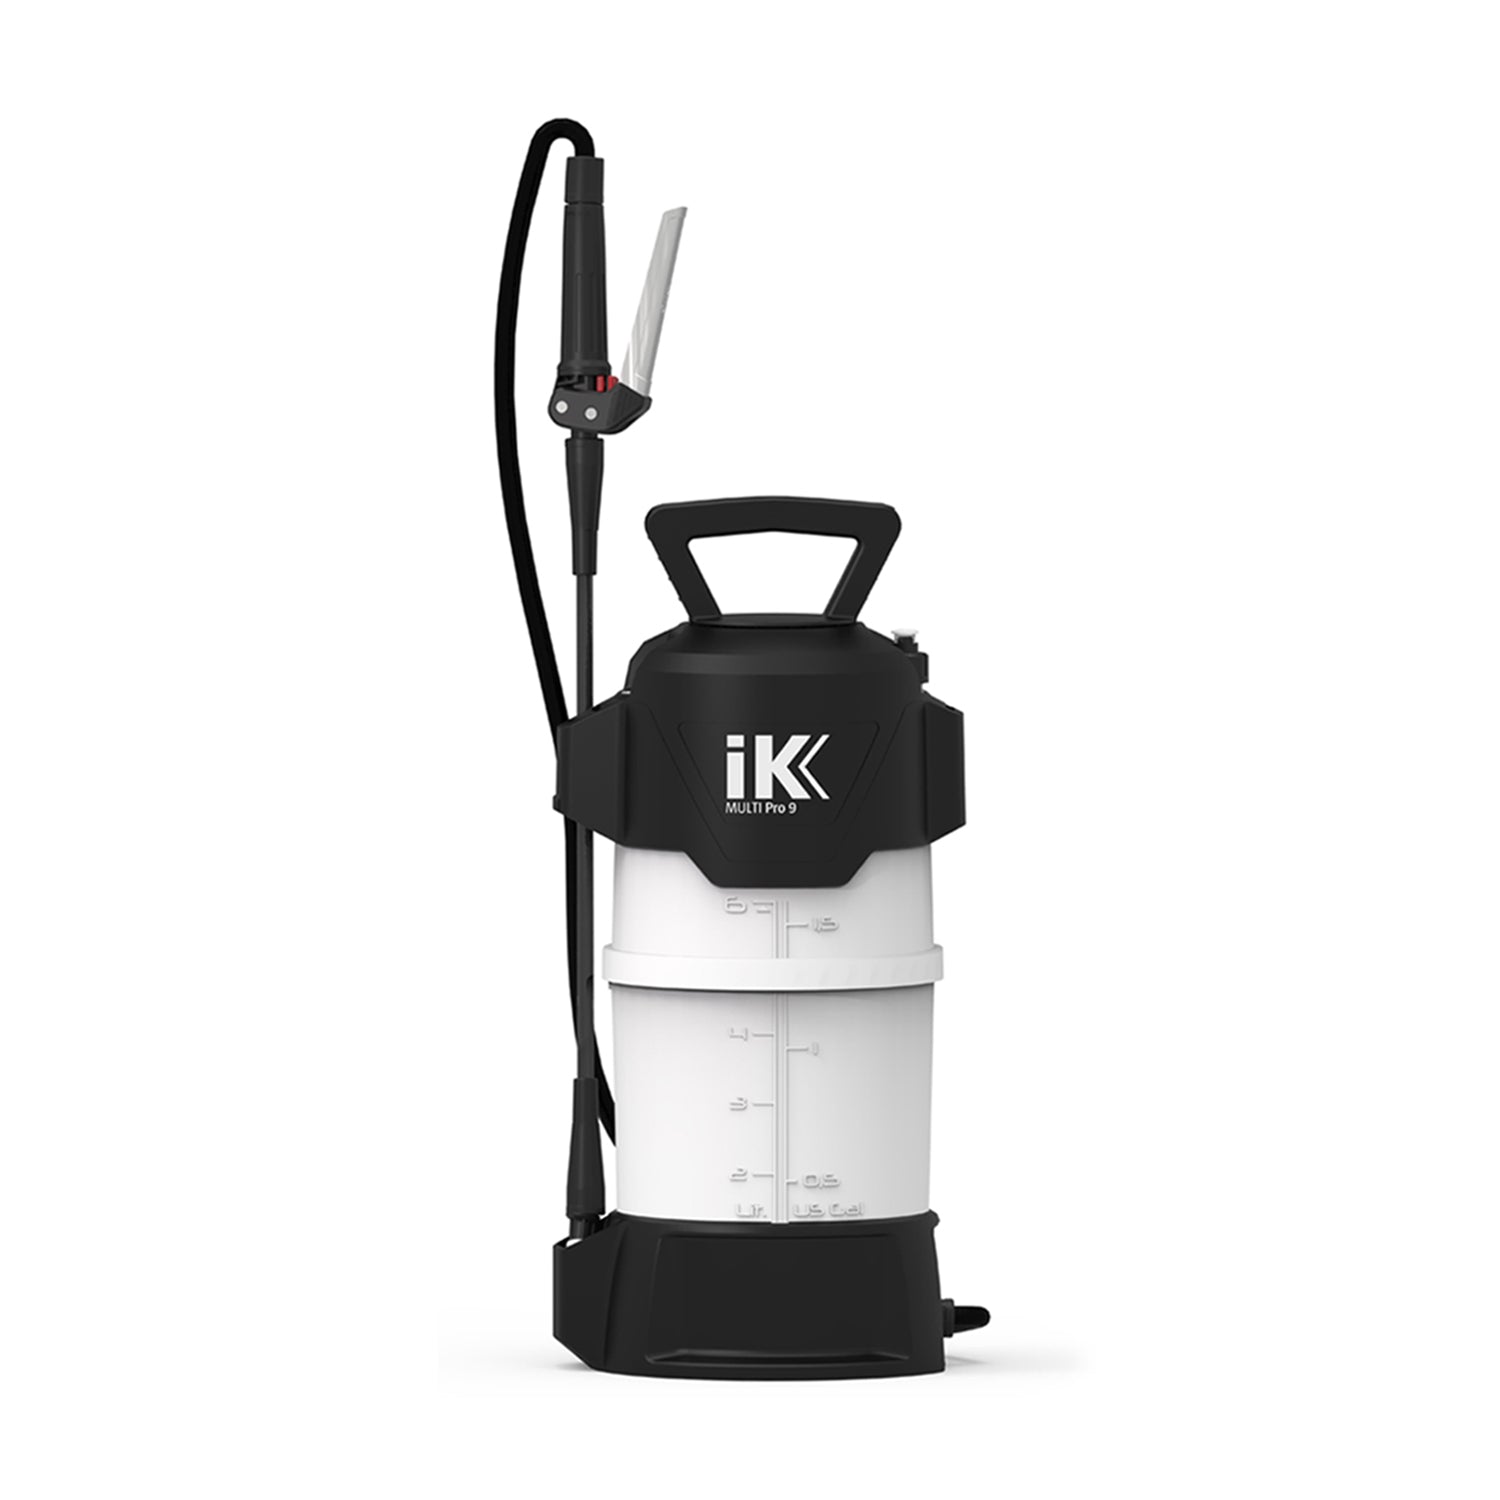 IK Spraying Solutions - Goizper Group